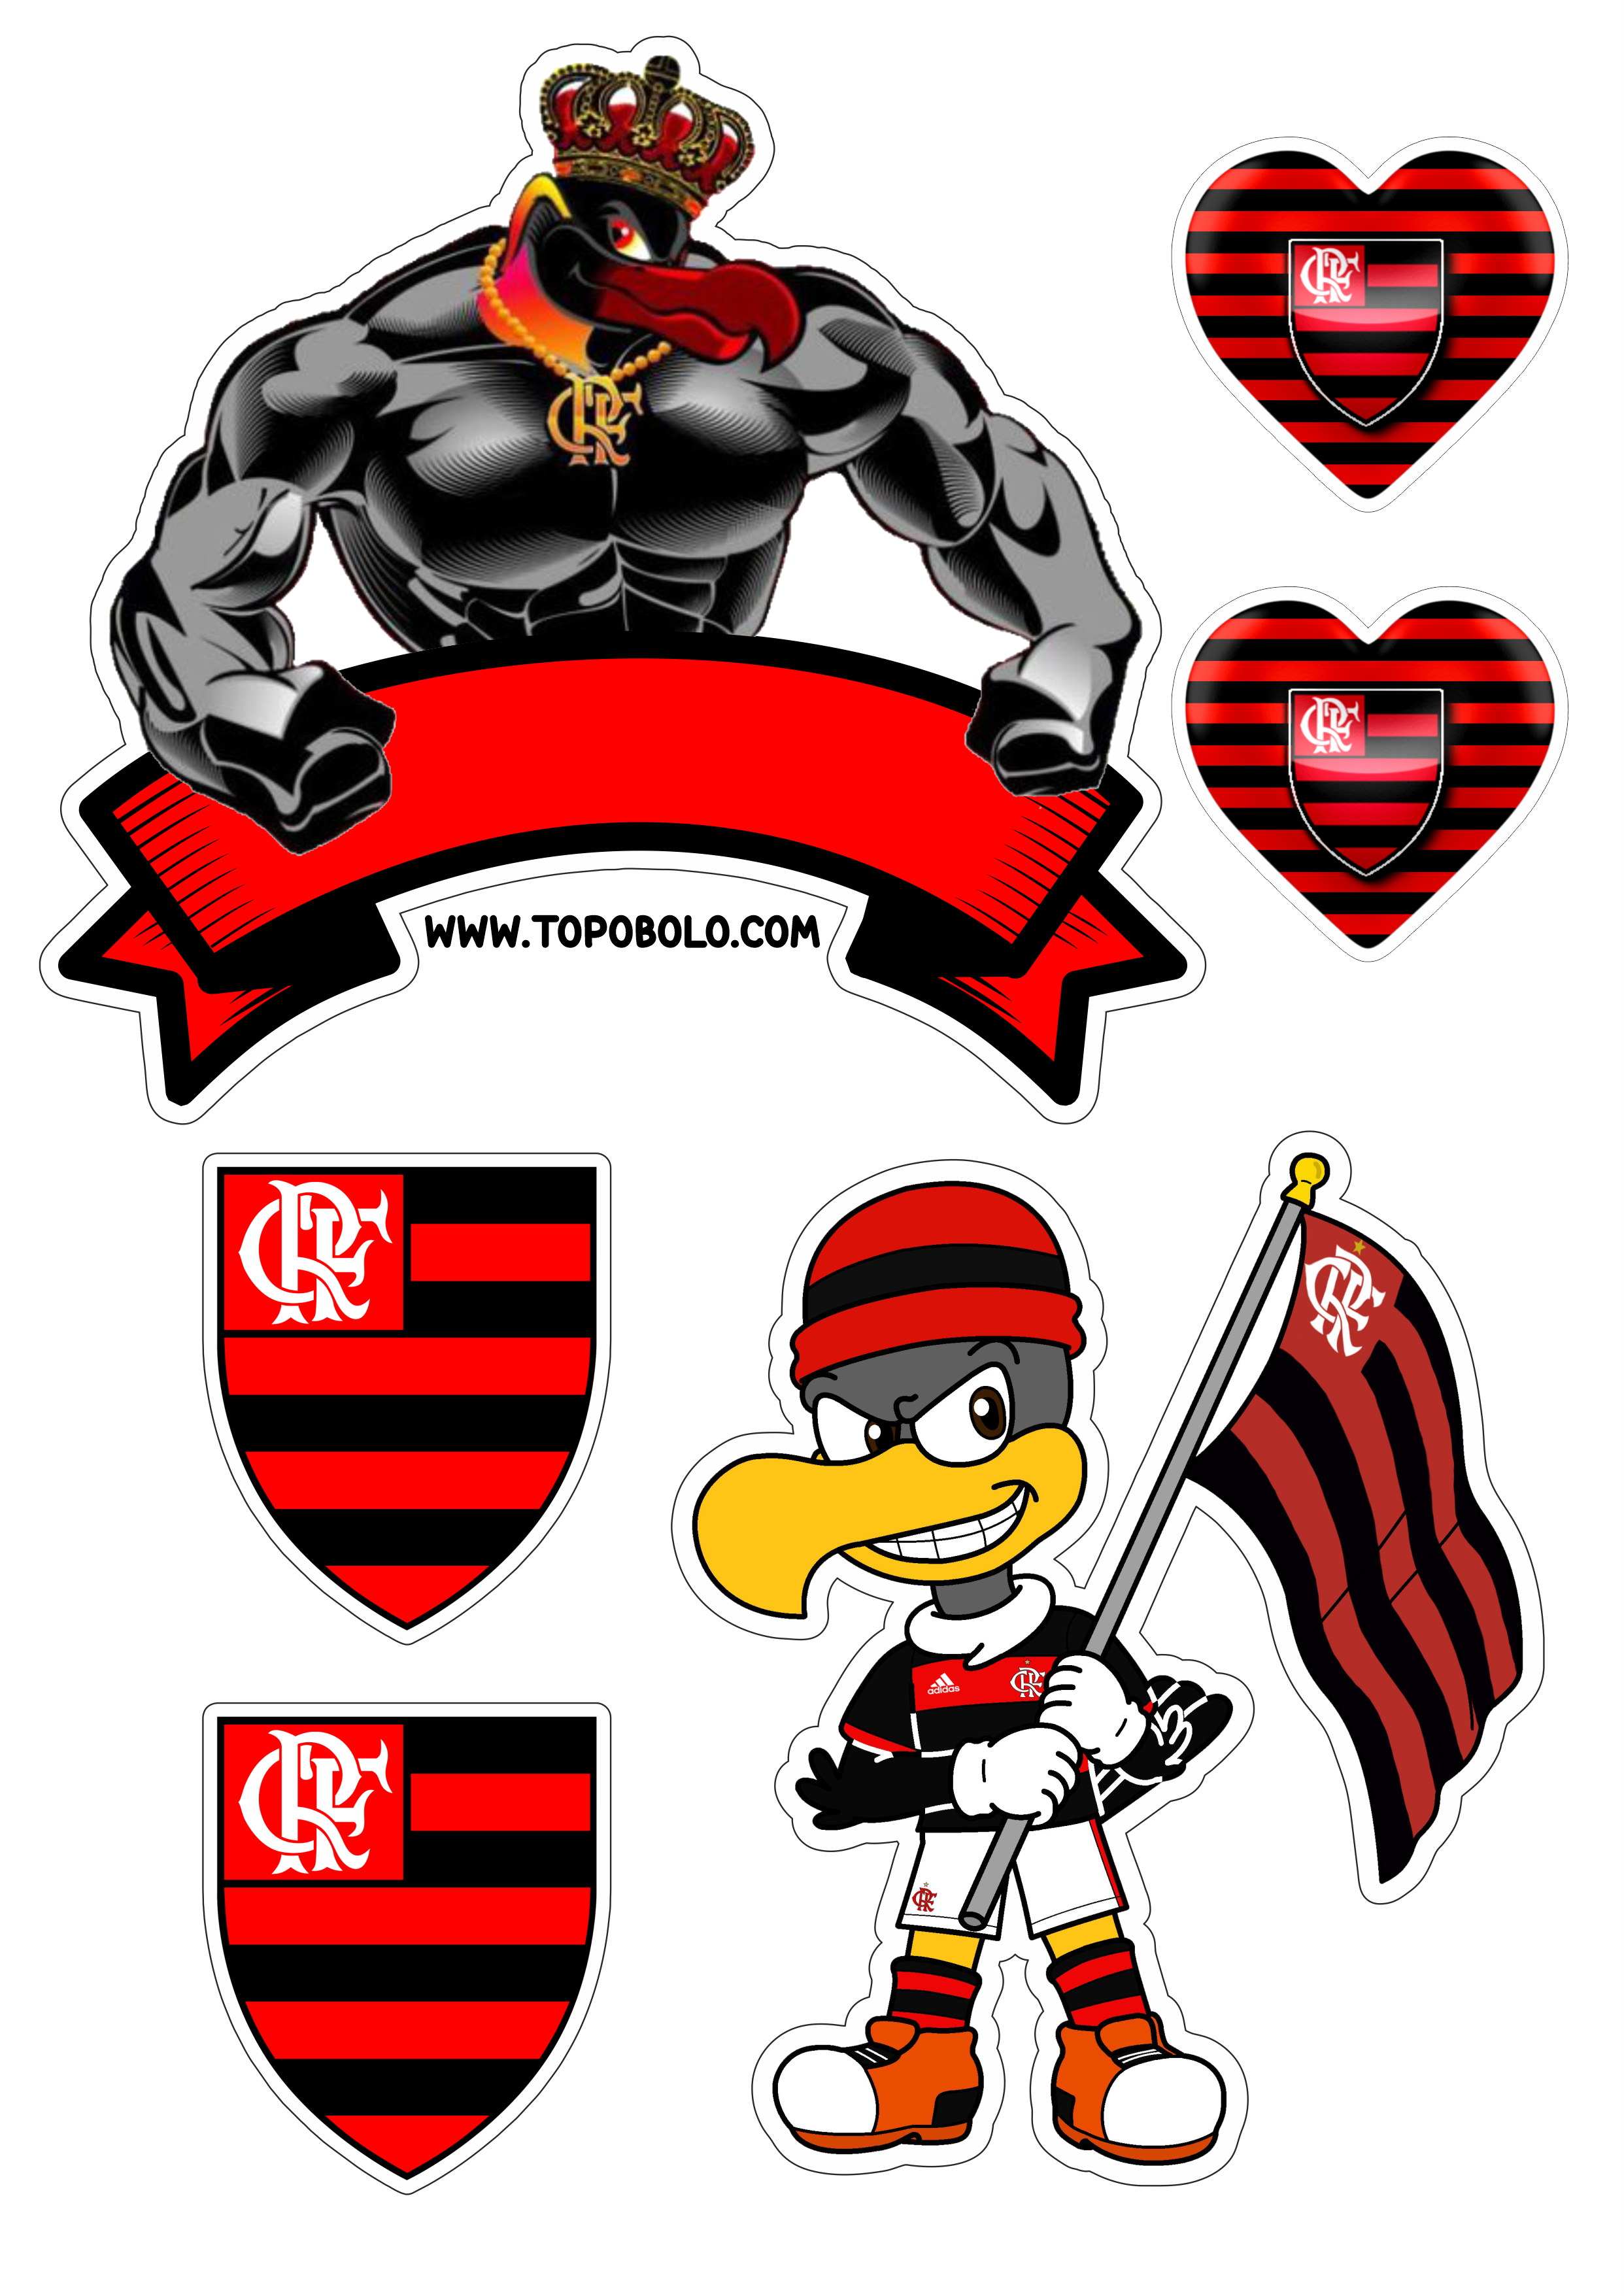 Flamengo futebol clube topo de bolo decoração de aniversário urubu png